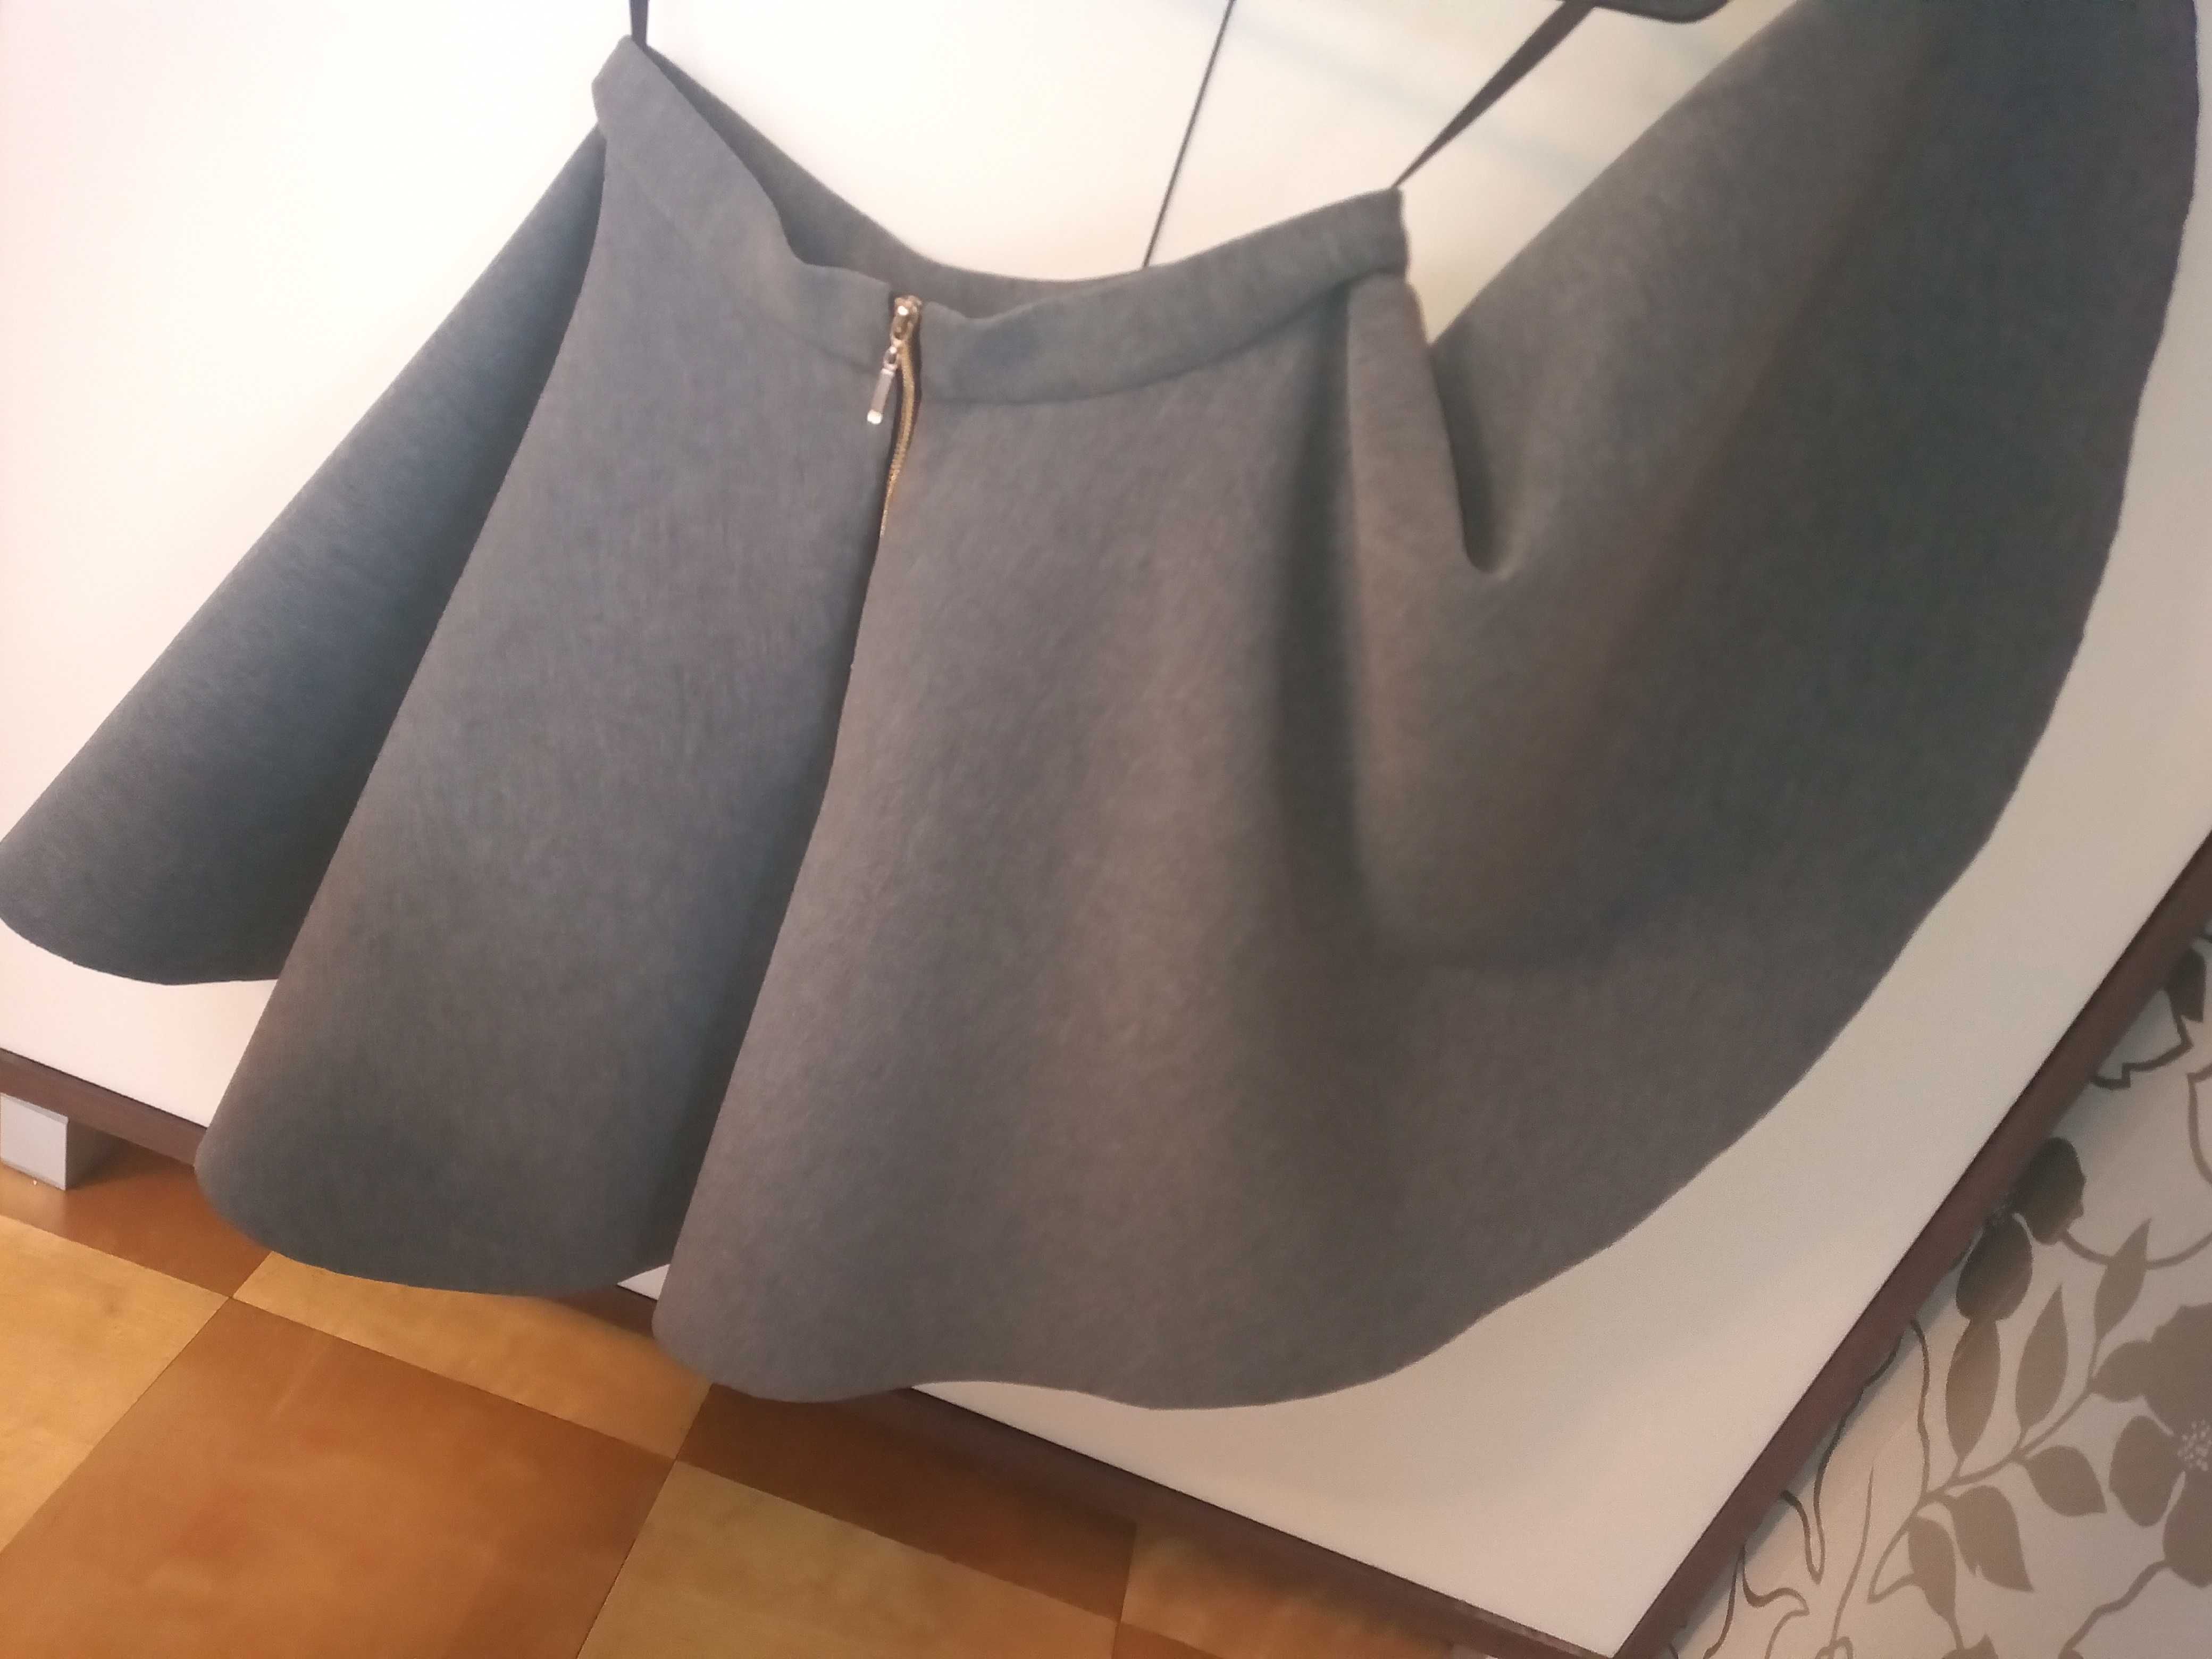 Piankowa szara siwa spódnica w kształcie koła rozkloszowana